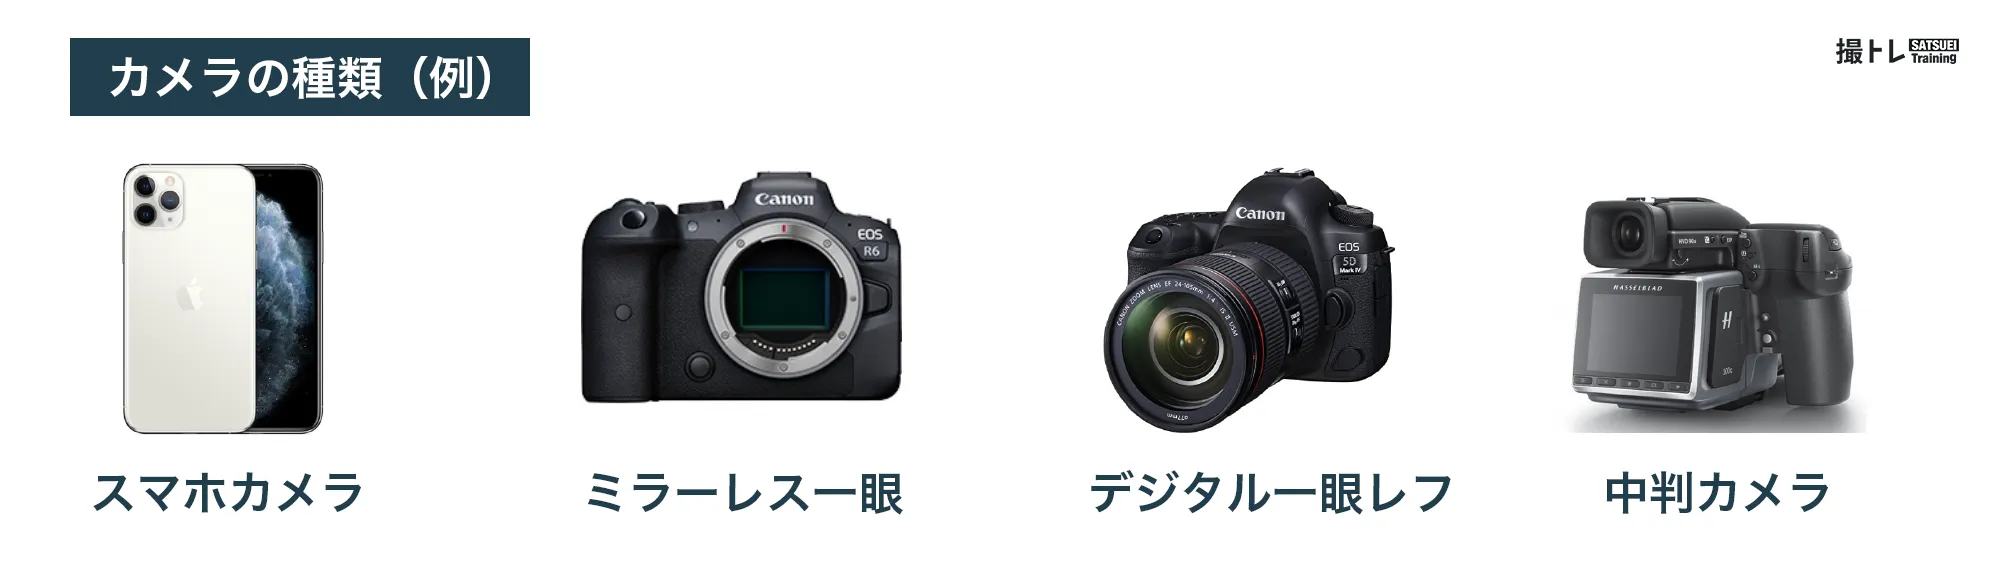 カメラの種類